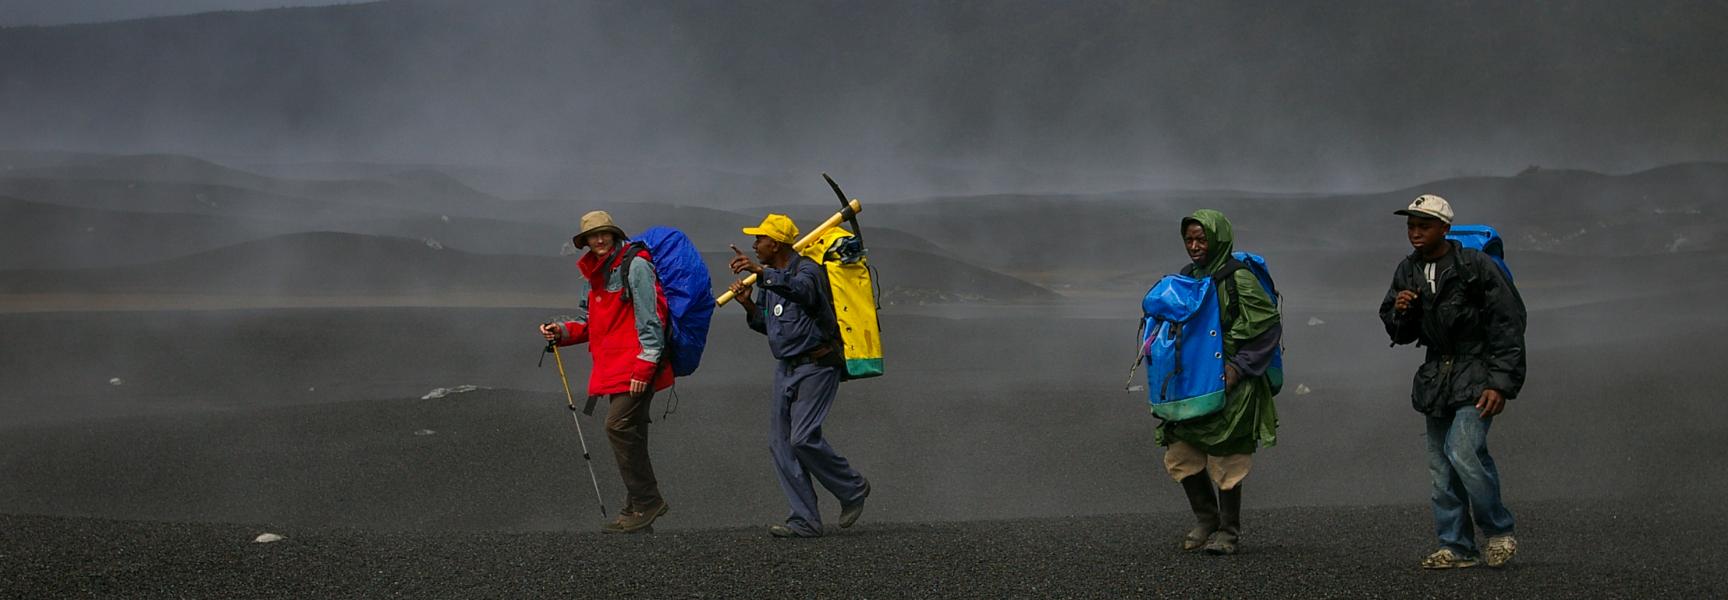 Men walking in a volcanic area in Comoros